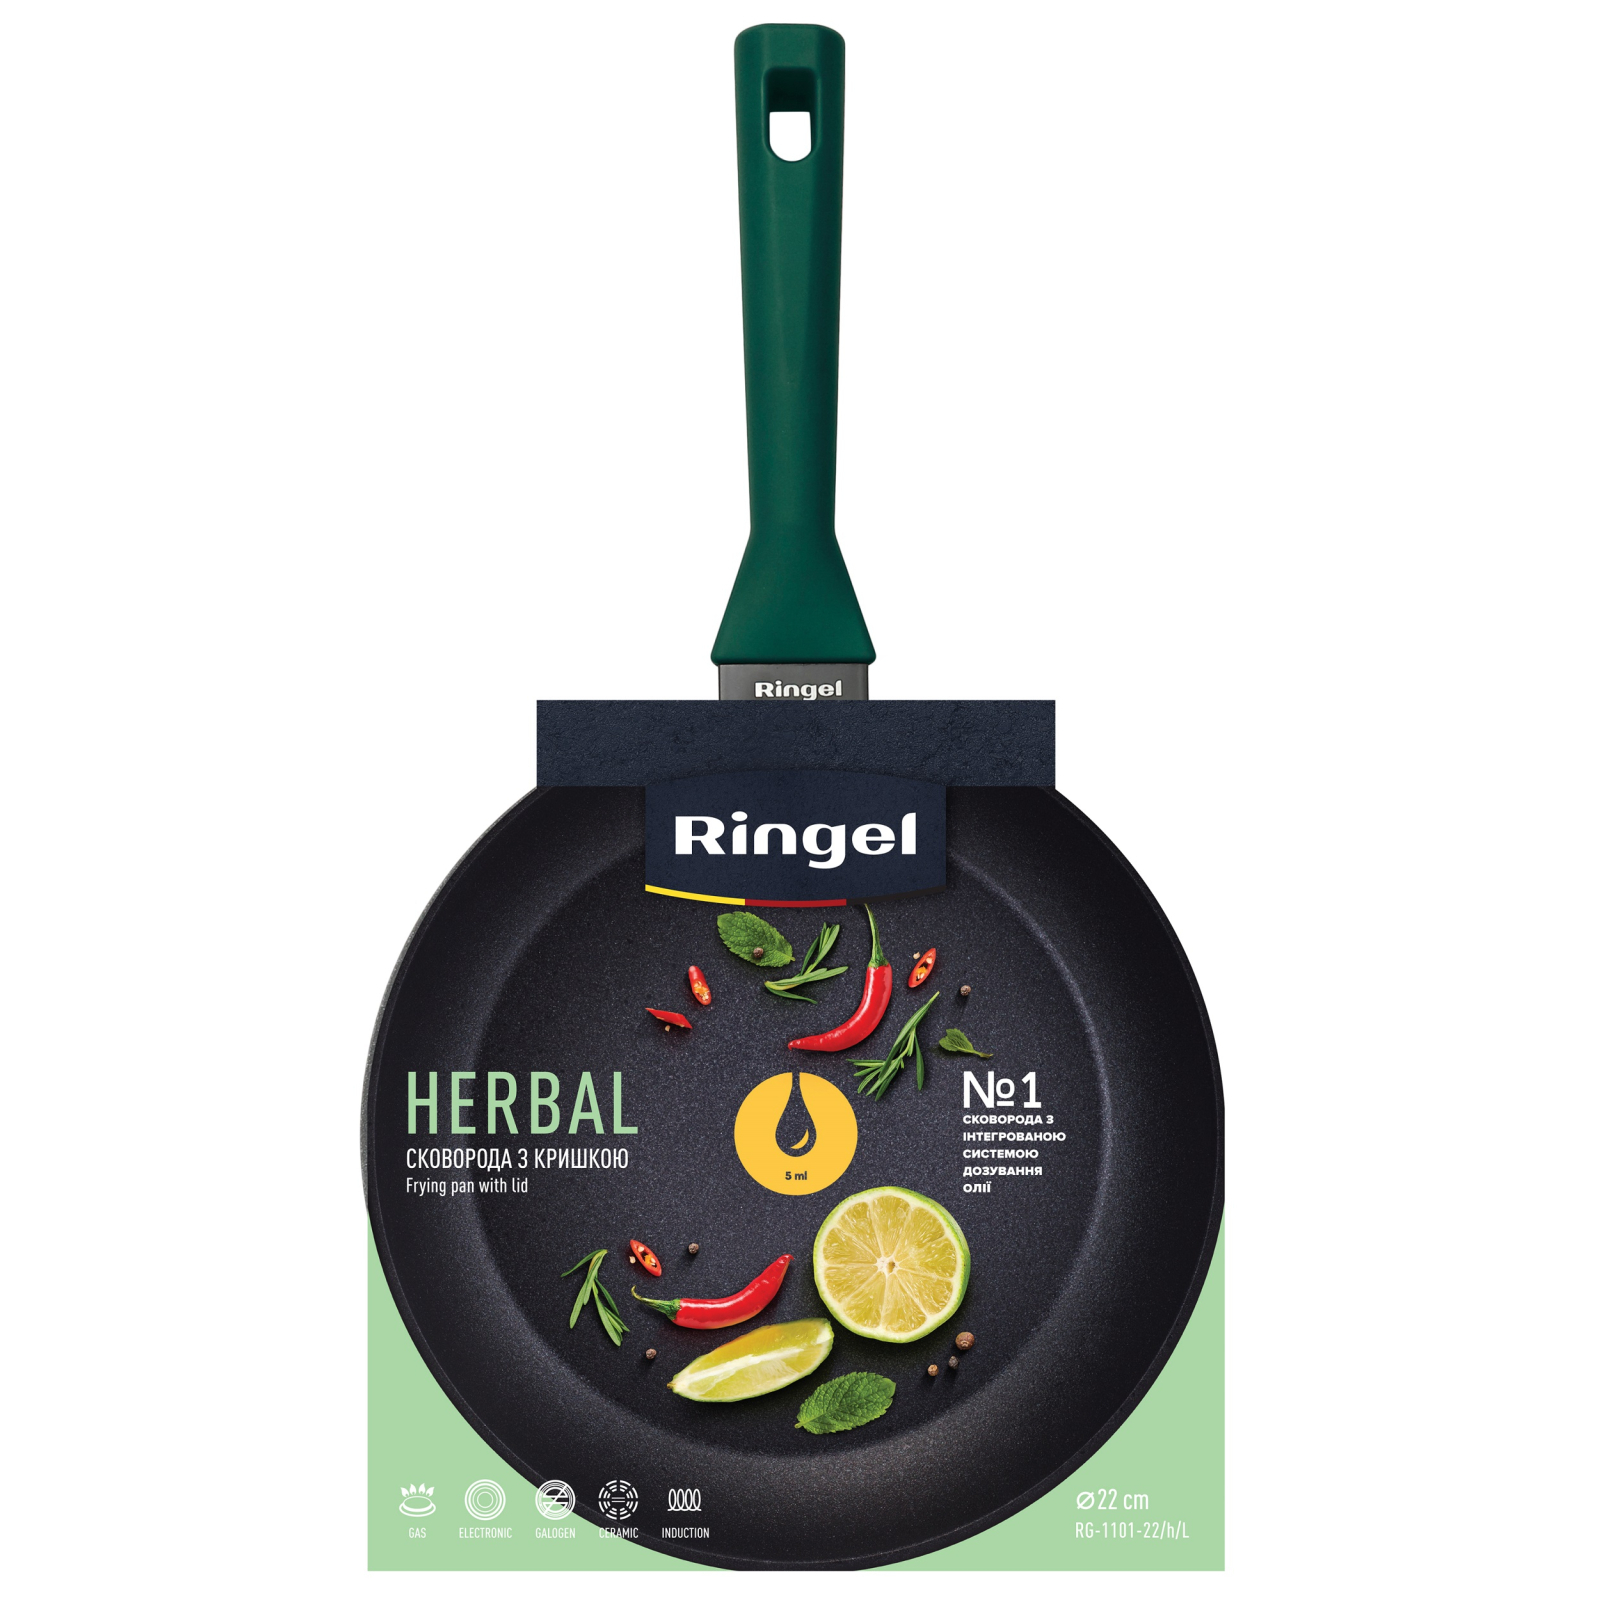 Сковорода Ringel Herbal 24 см (RG-1101-24/h/L) изображение 2